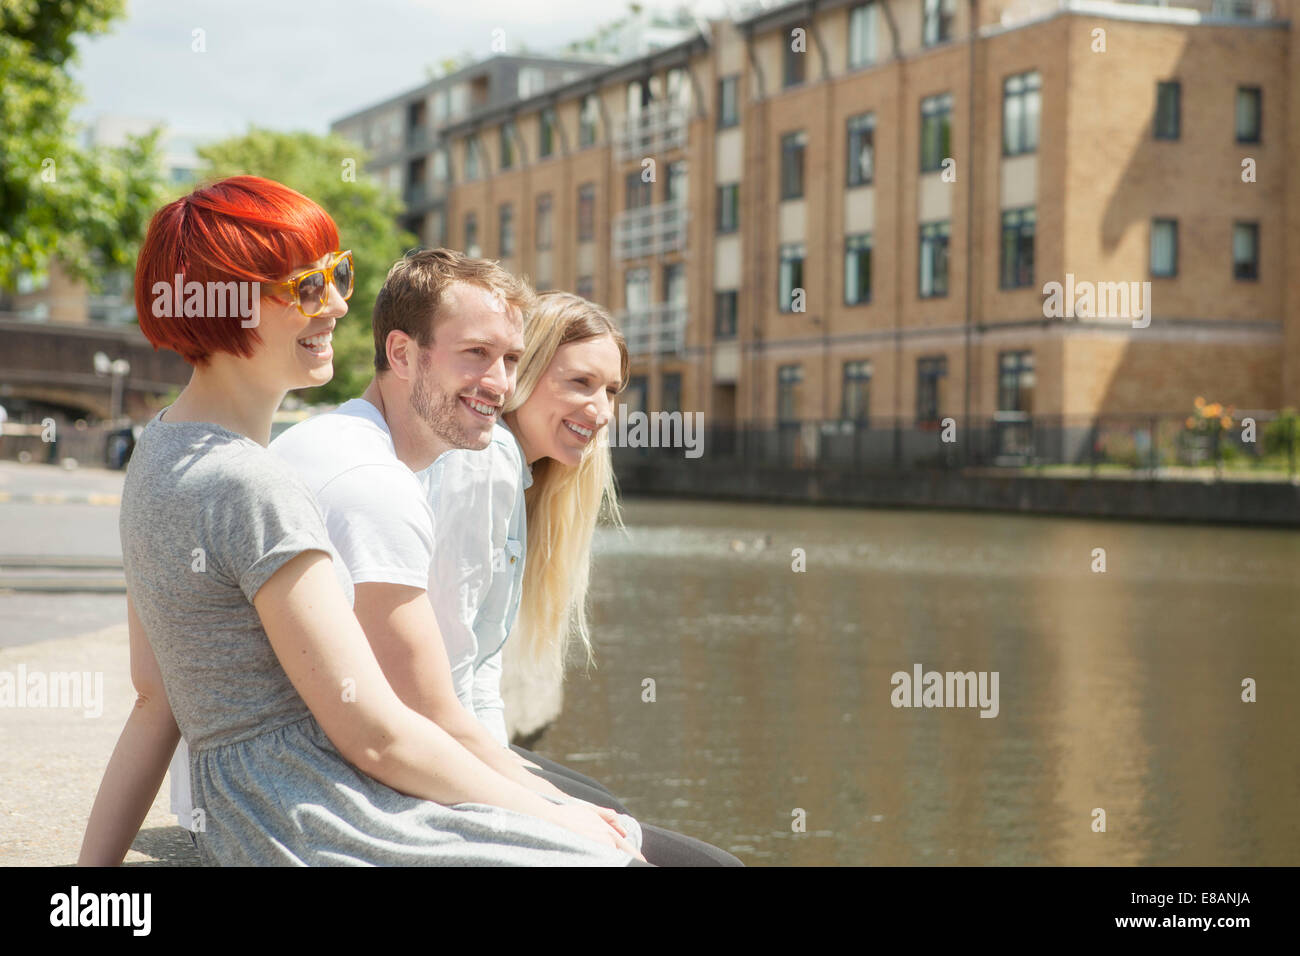 Amis assis côté canal, East London, UK Banque D'Images